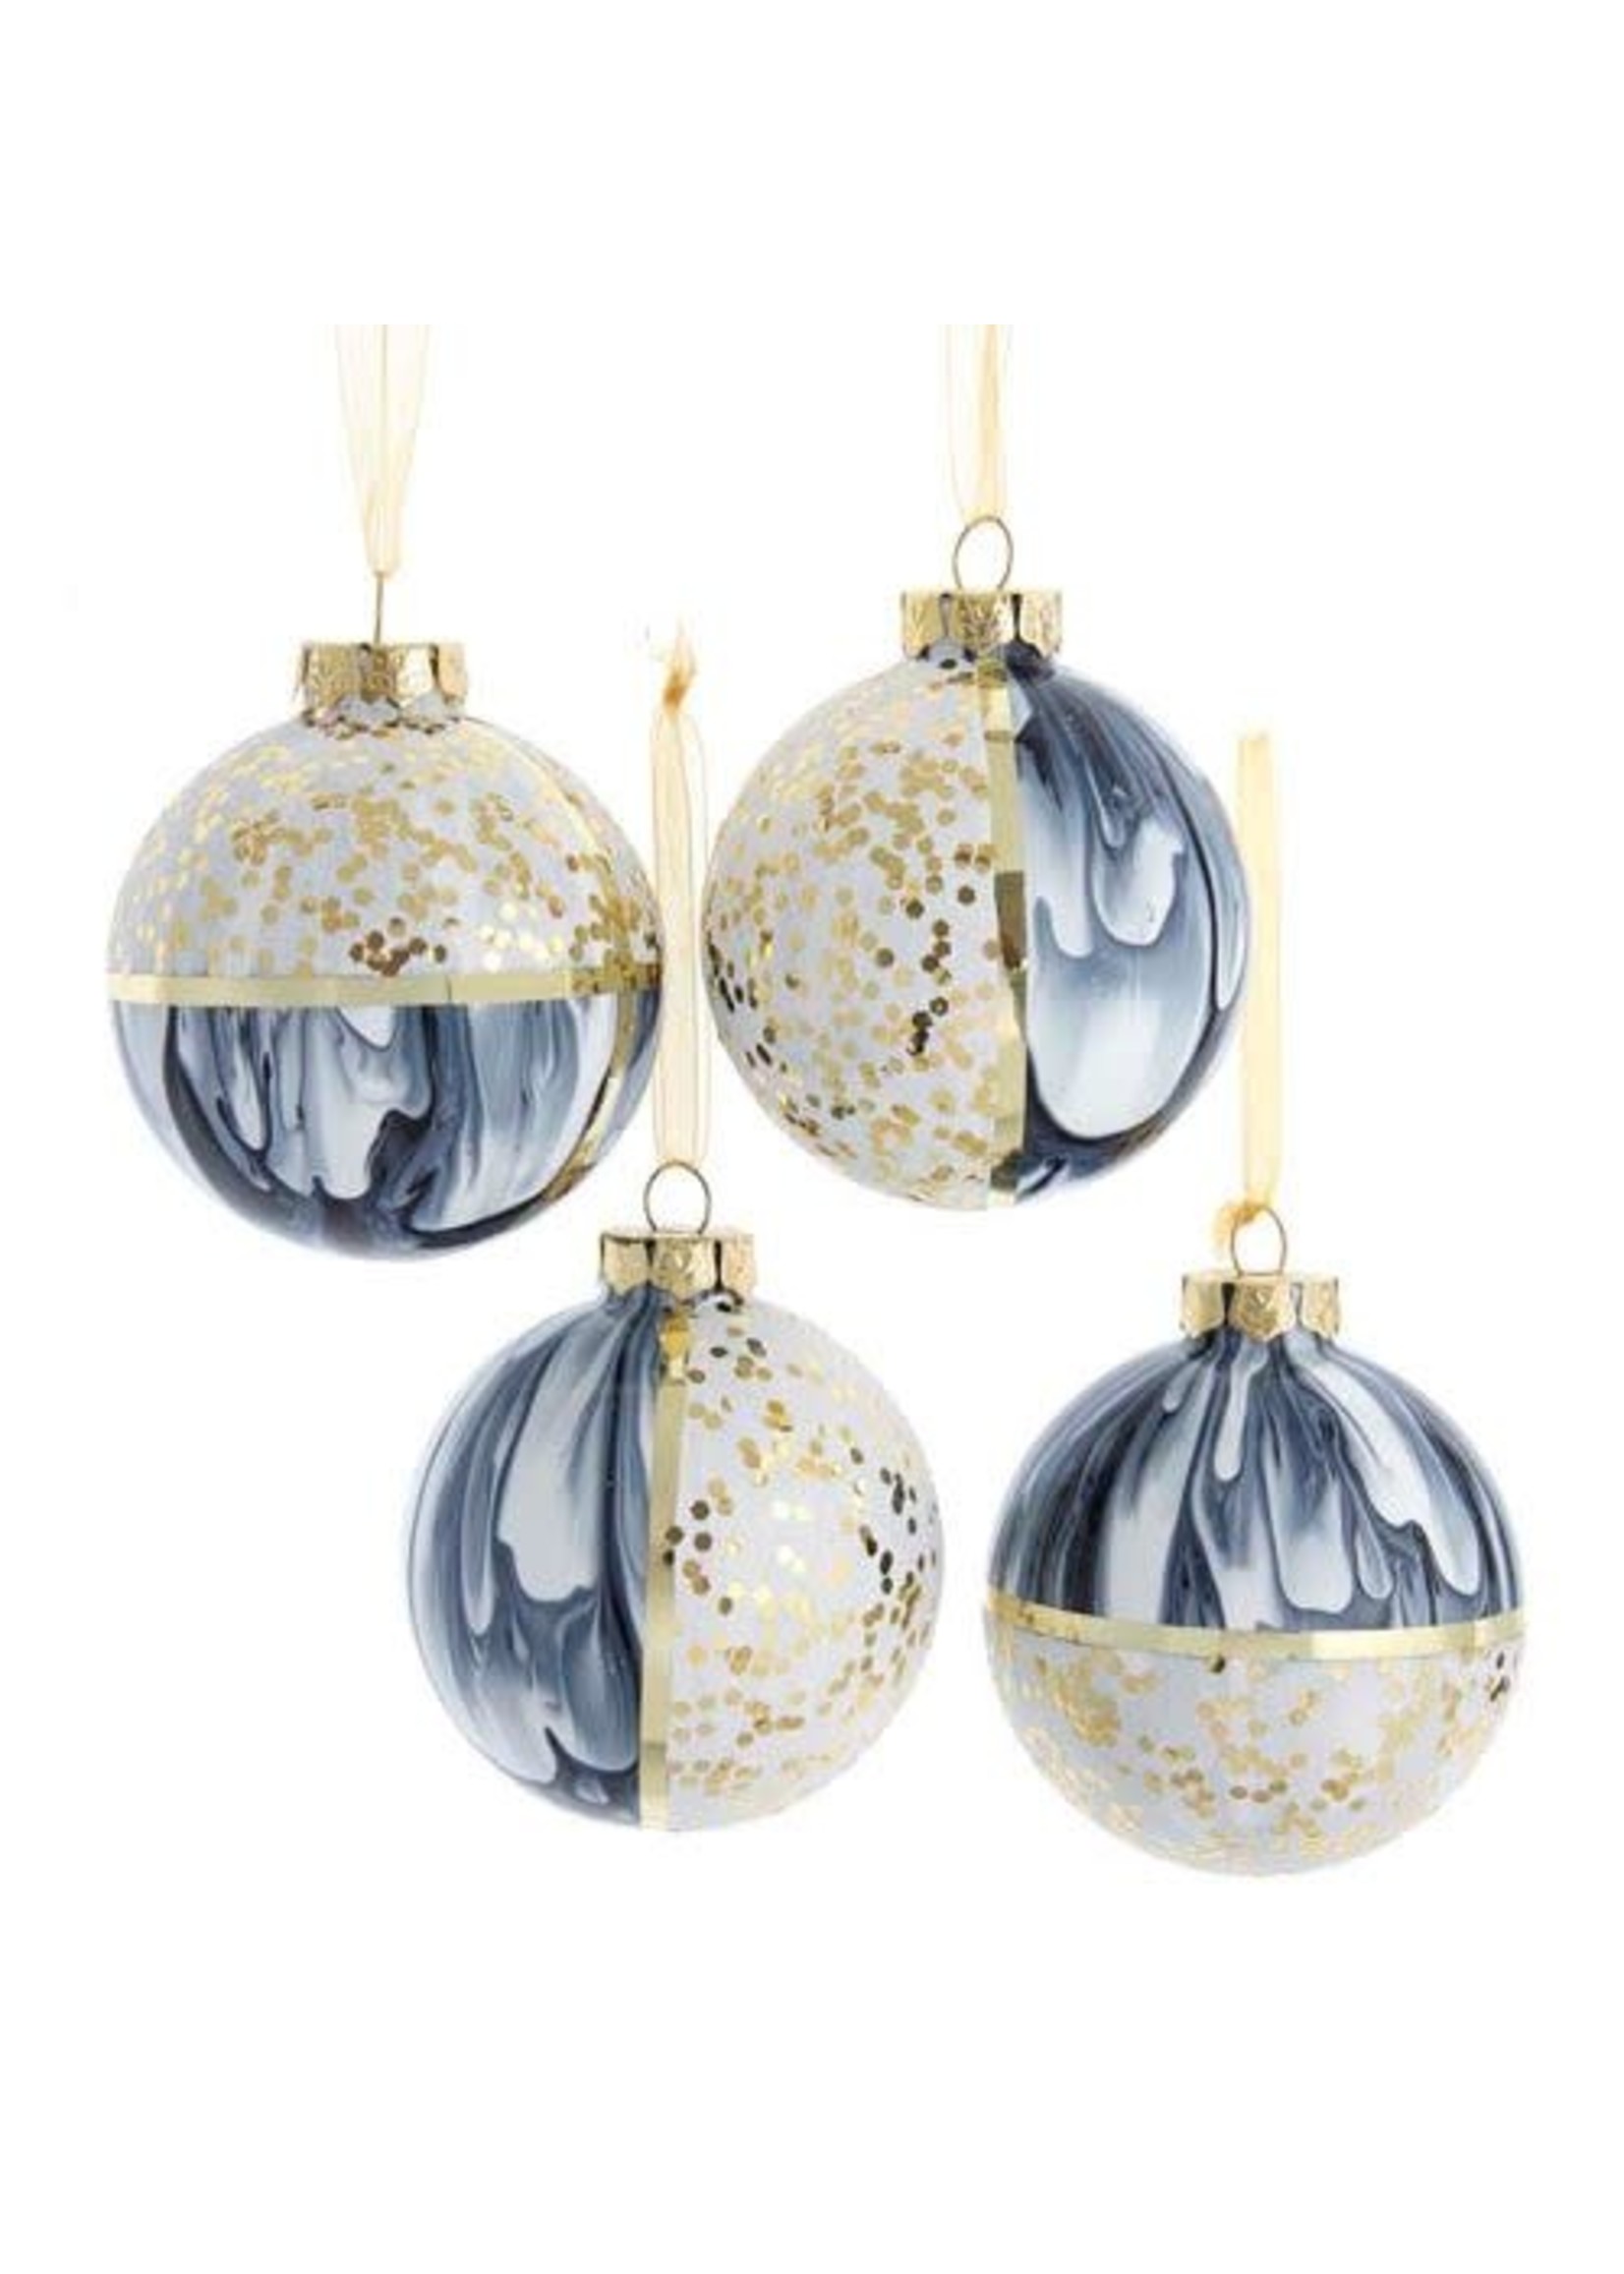 Kurt Adler 80MM Black/White Glass Ball Ornament